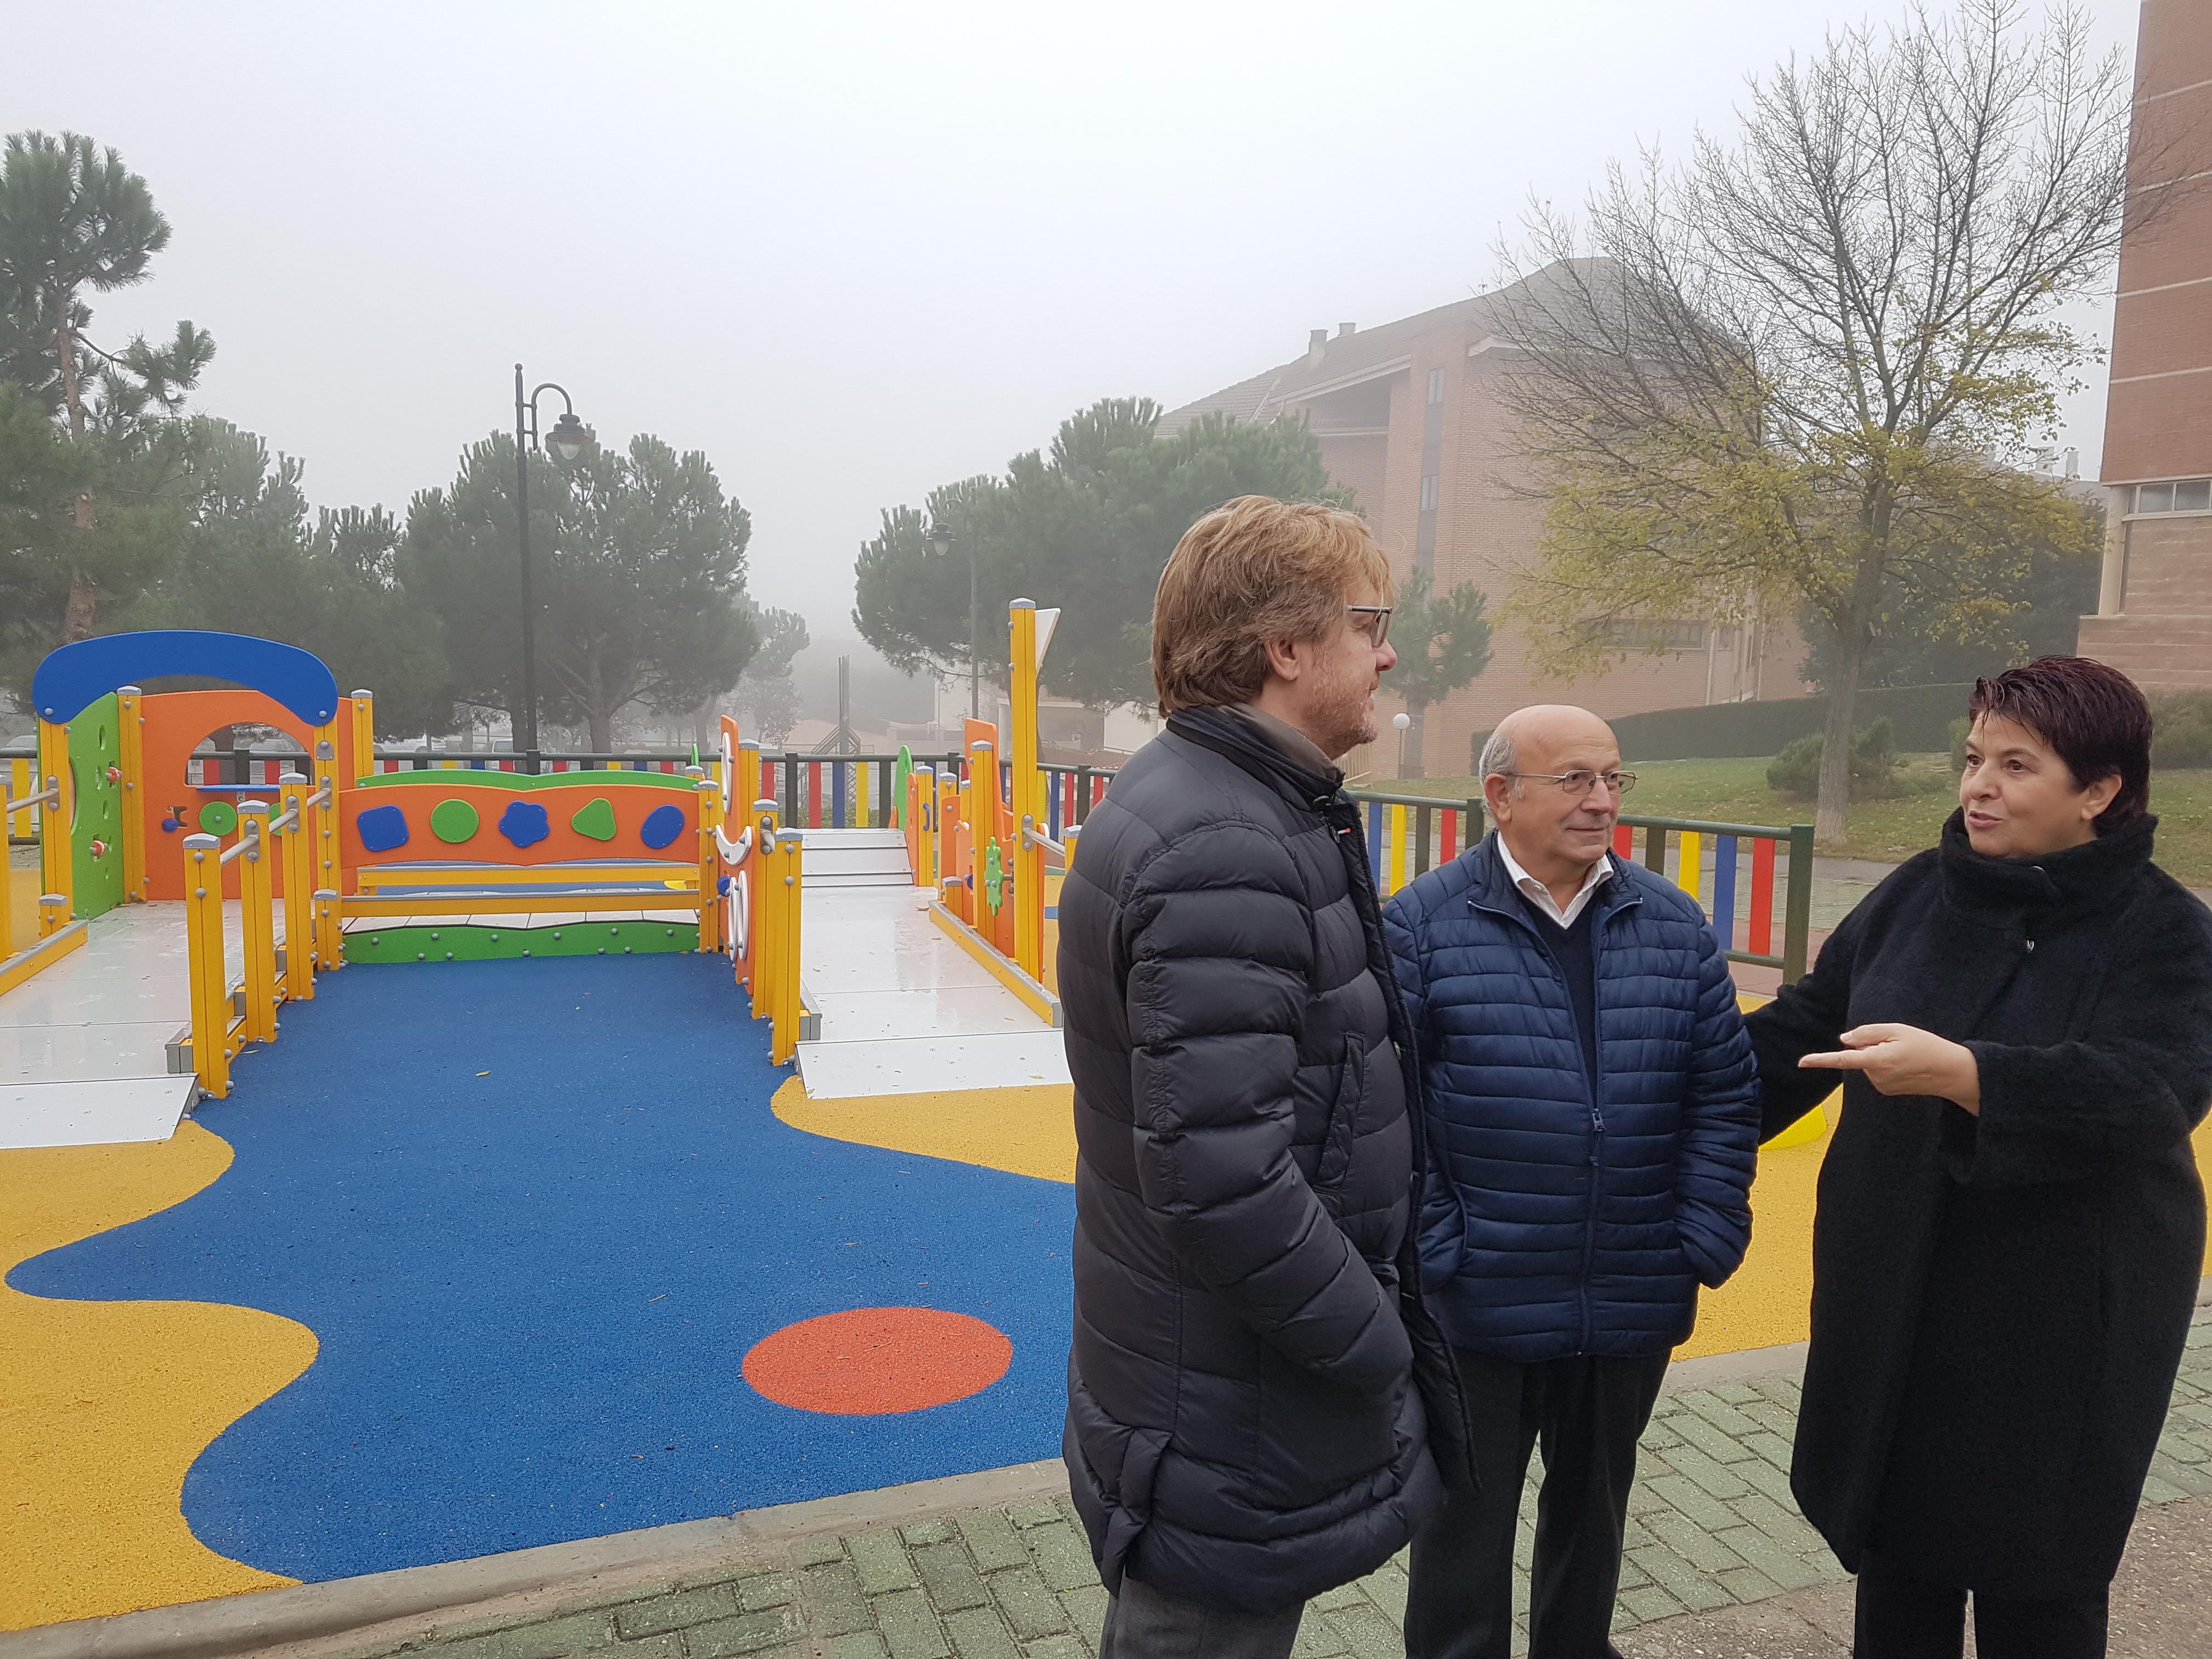 El Ayuntamiento renueva el área infantil del Parque del Reloj en Nueva Segovia